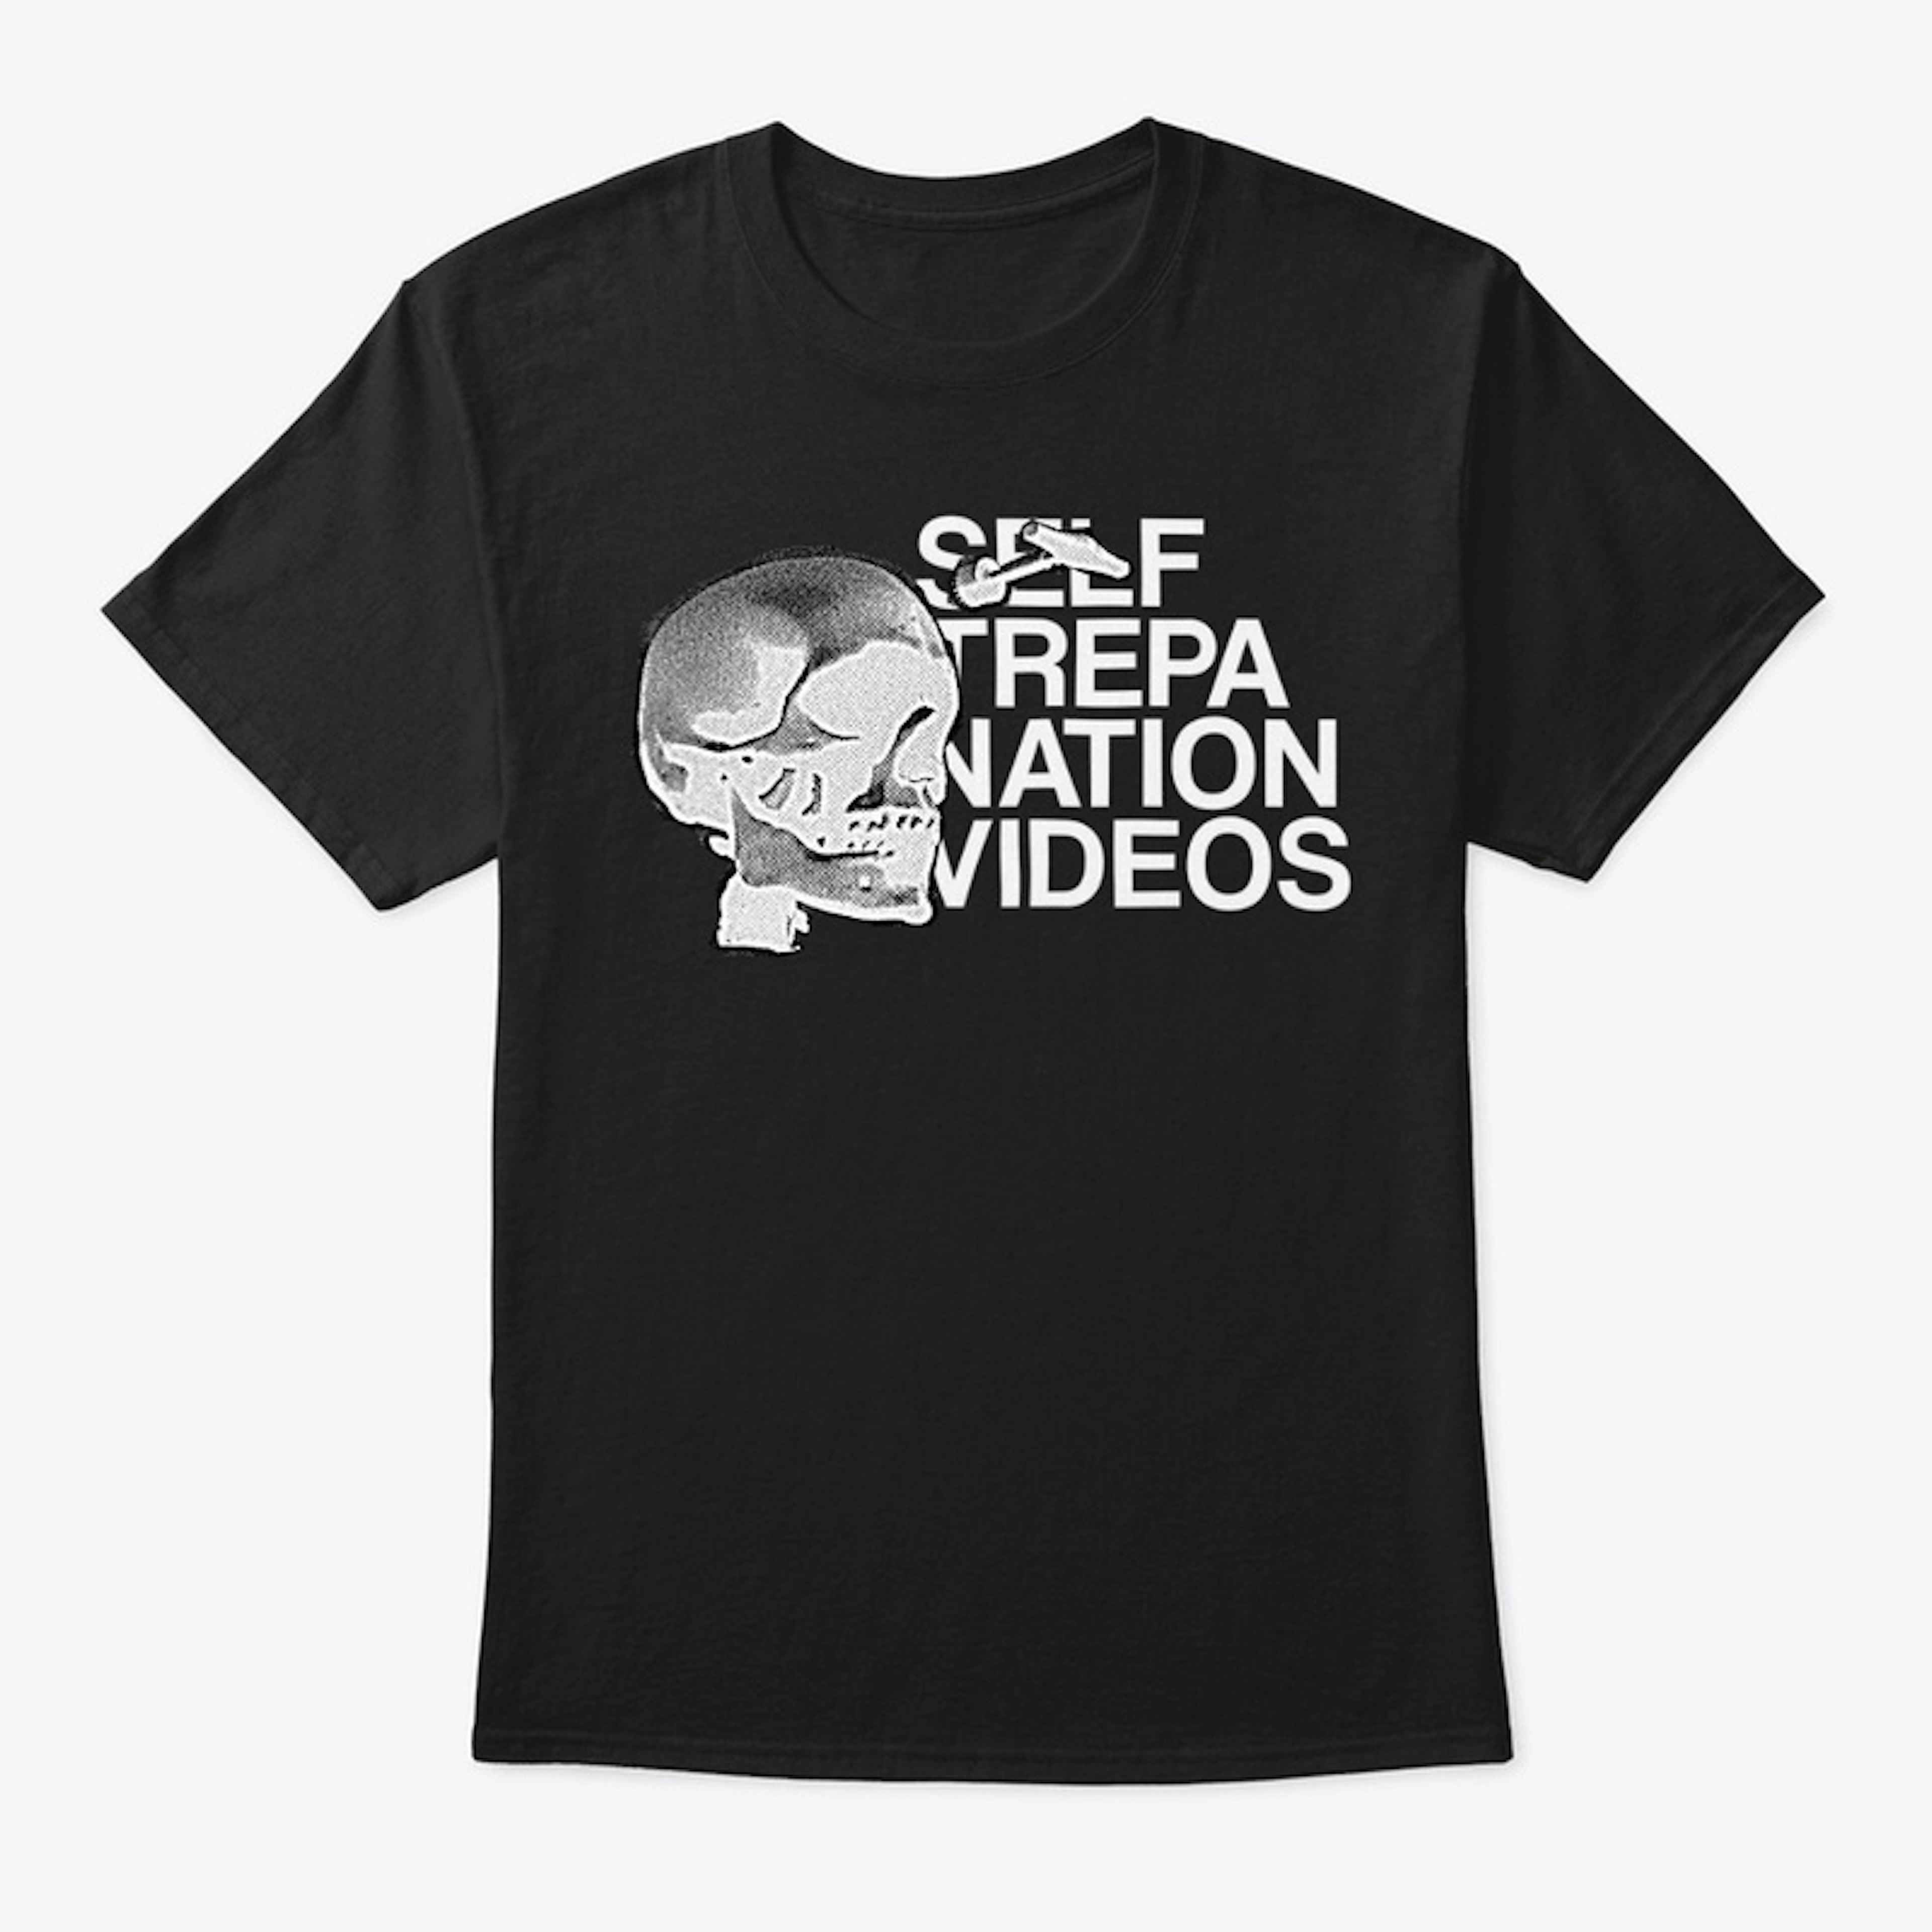 self trepanation videos - BLACK (alt.)